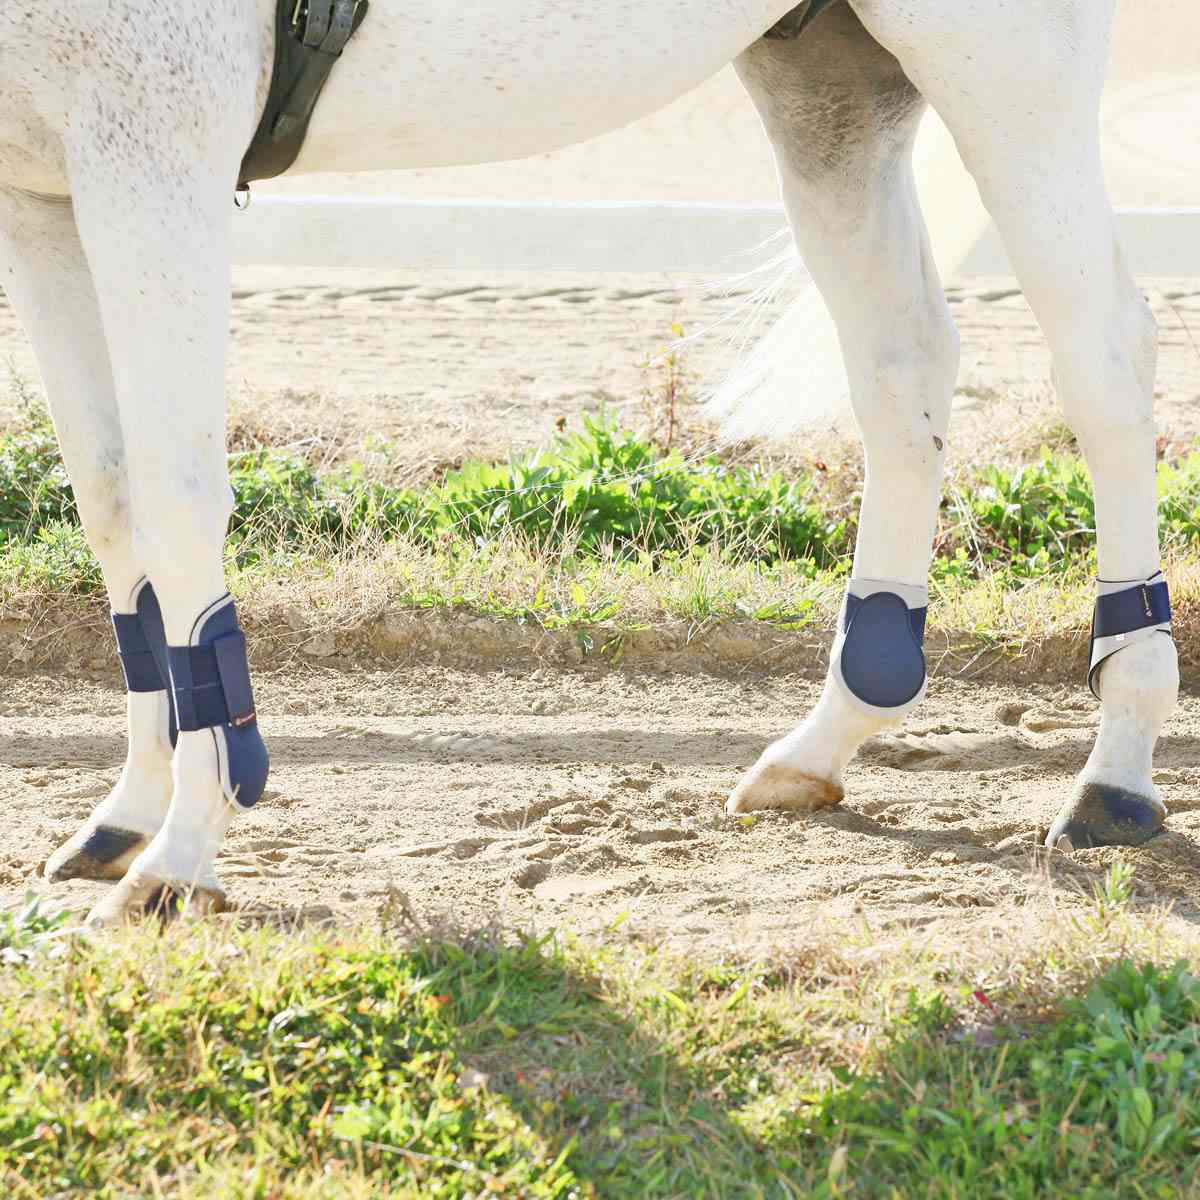 【楽天市場】乗馬 馬用 肢 プロテクター 前肢 後肢 左右 4肢 セット 乗馬用品 馬 用 馬具 用品 初心者 ビギナー 競技 エクリベルタ